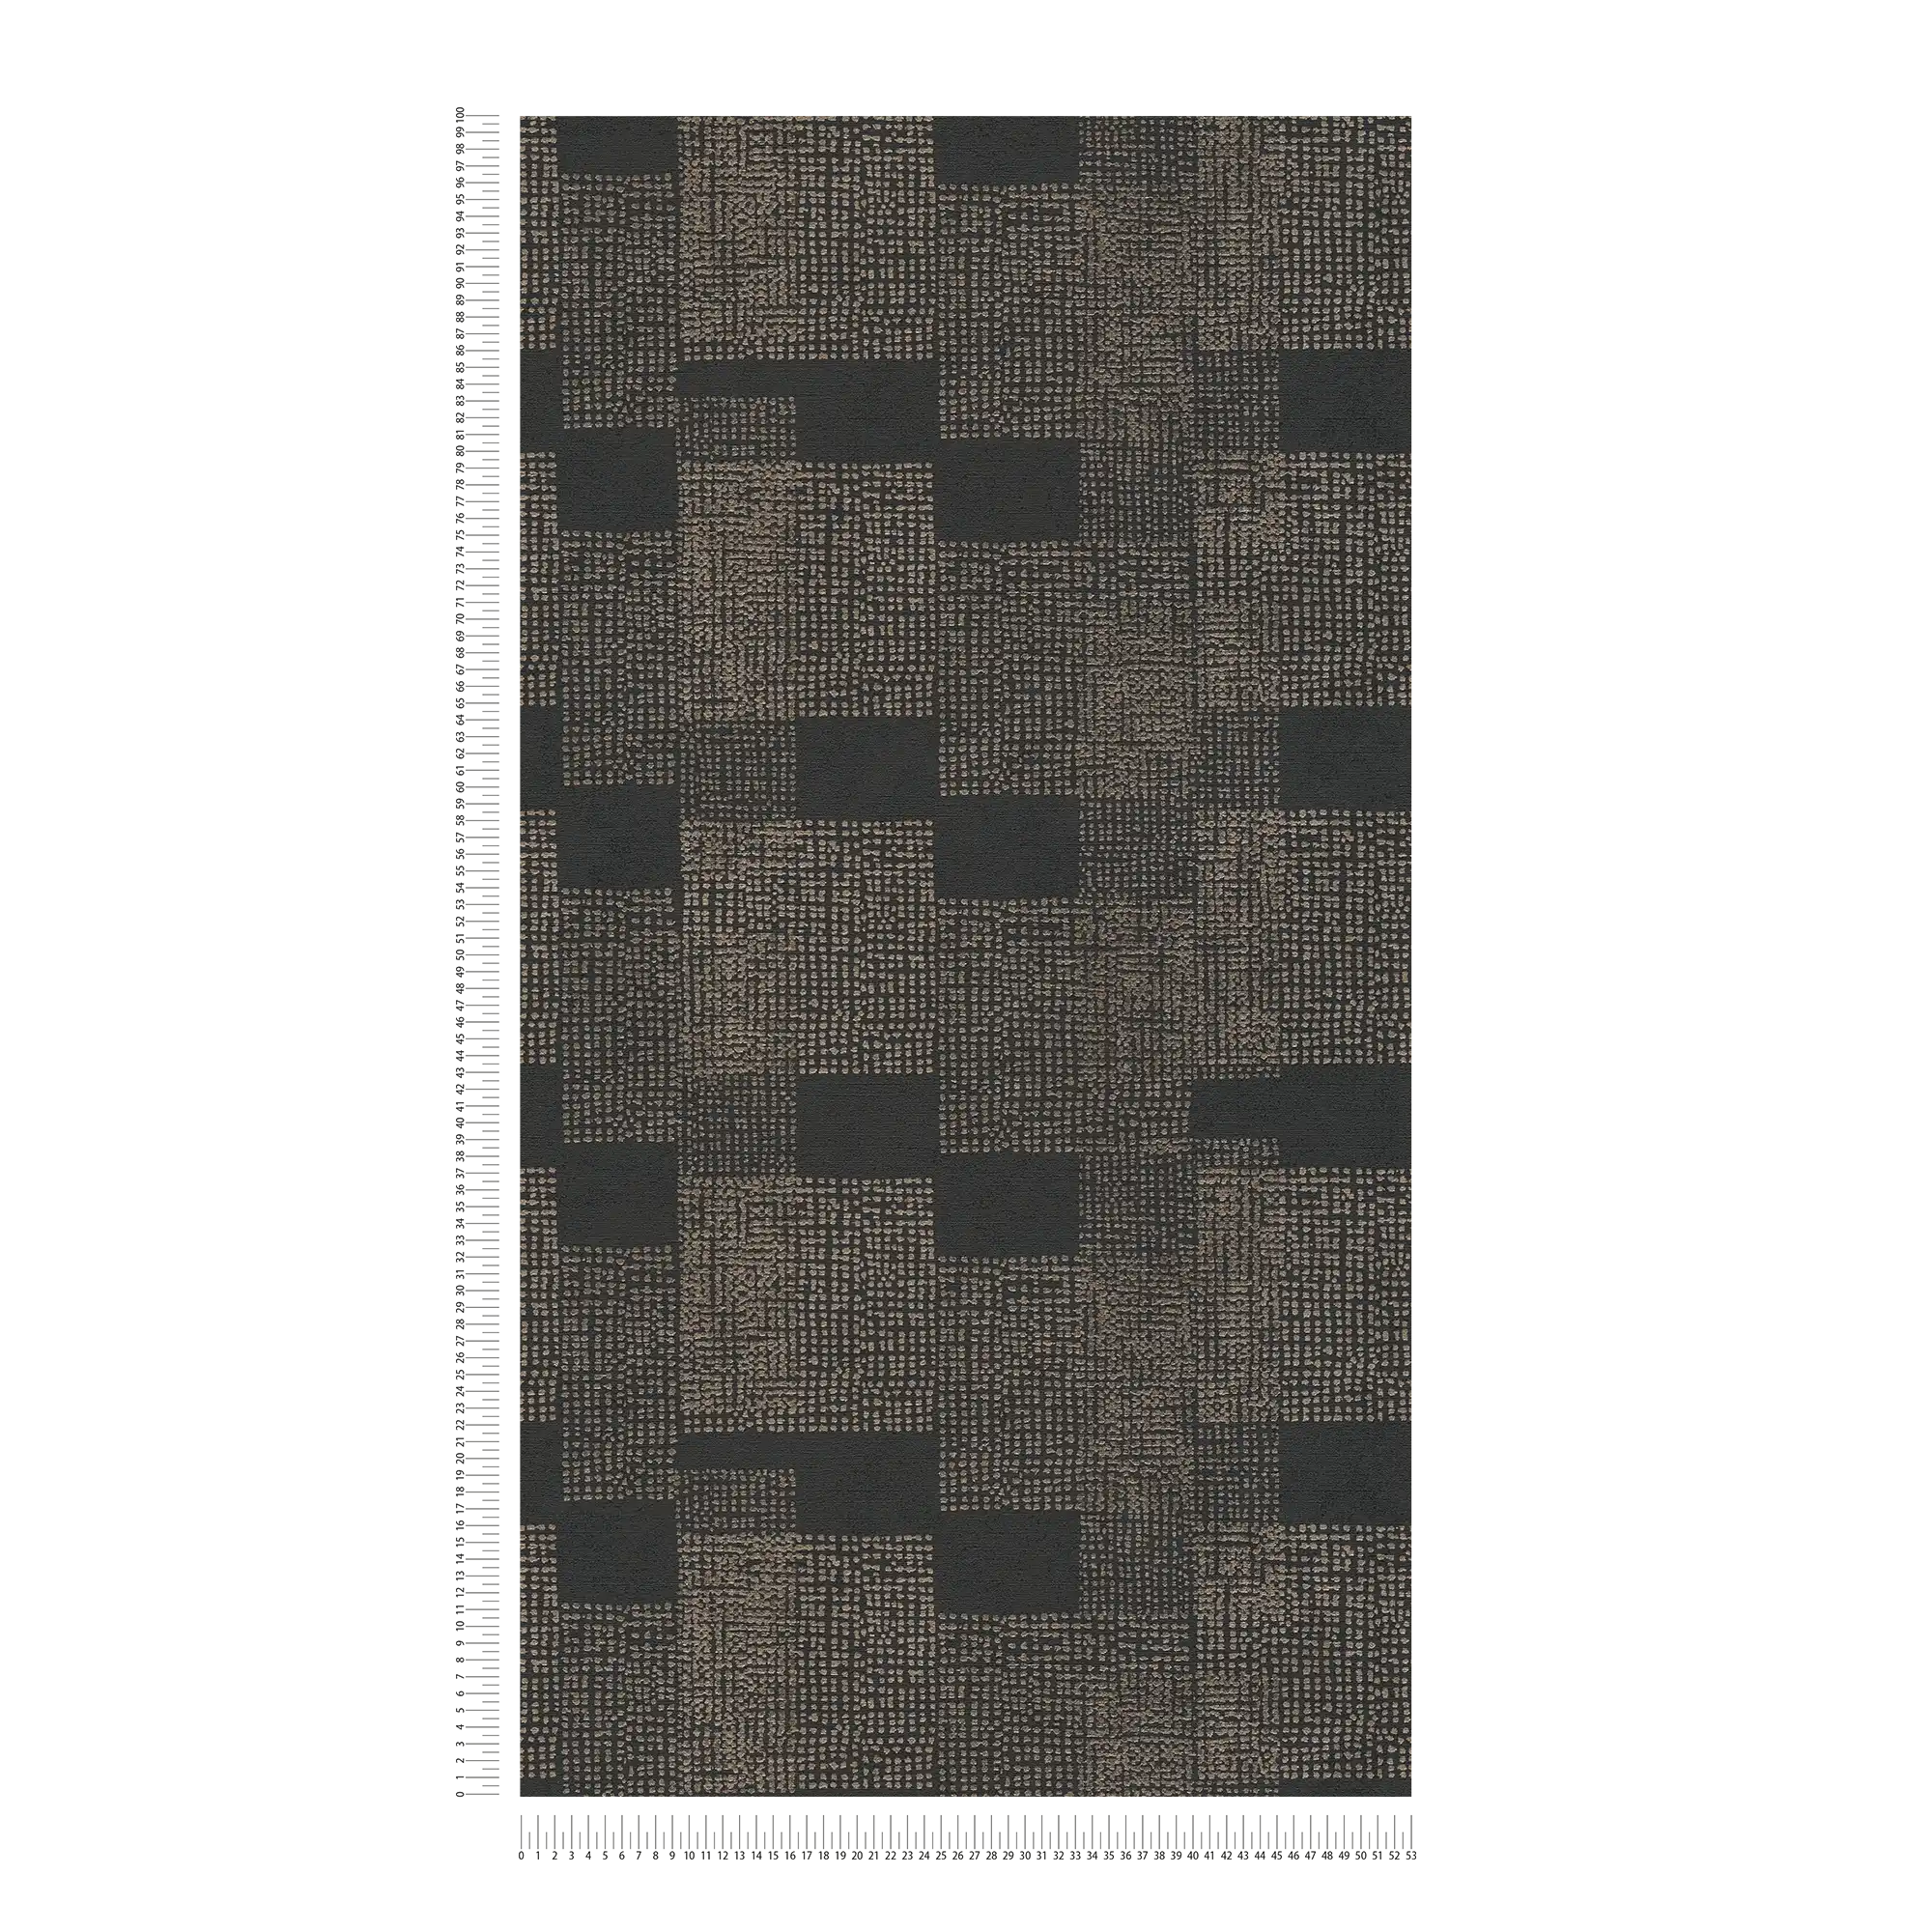             Papier peint à motifs Ethno Design - noir, gris, métallique
        